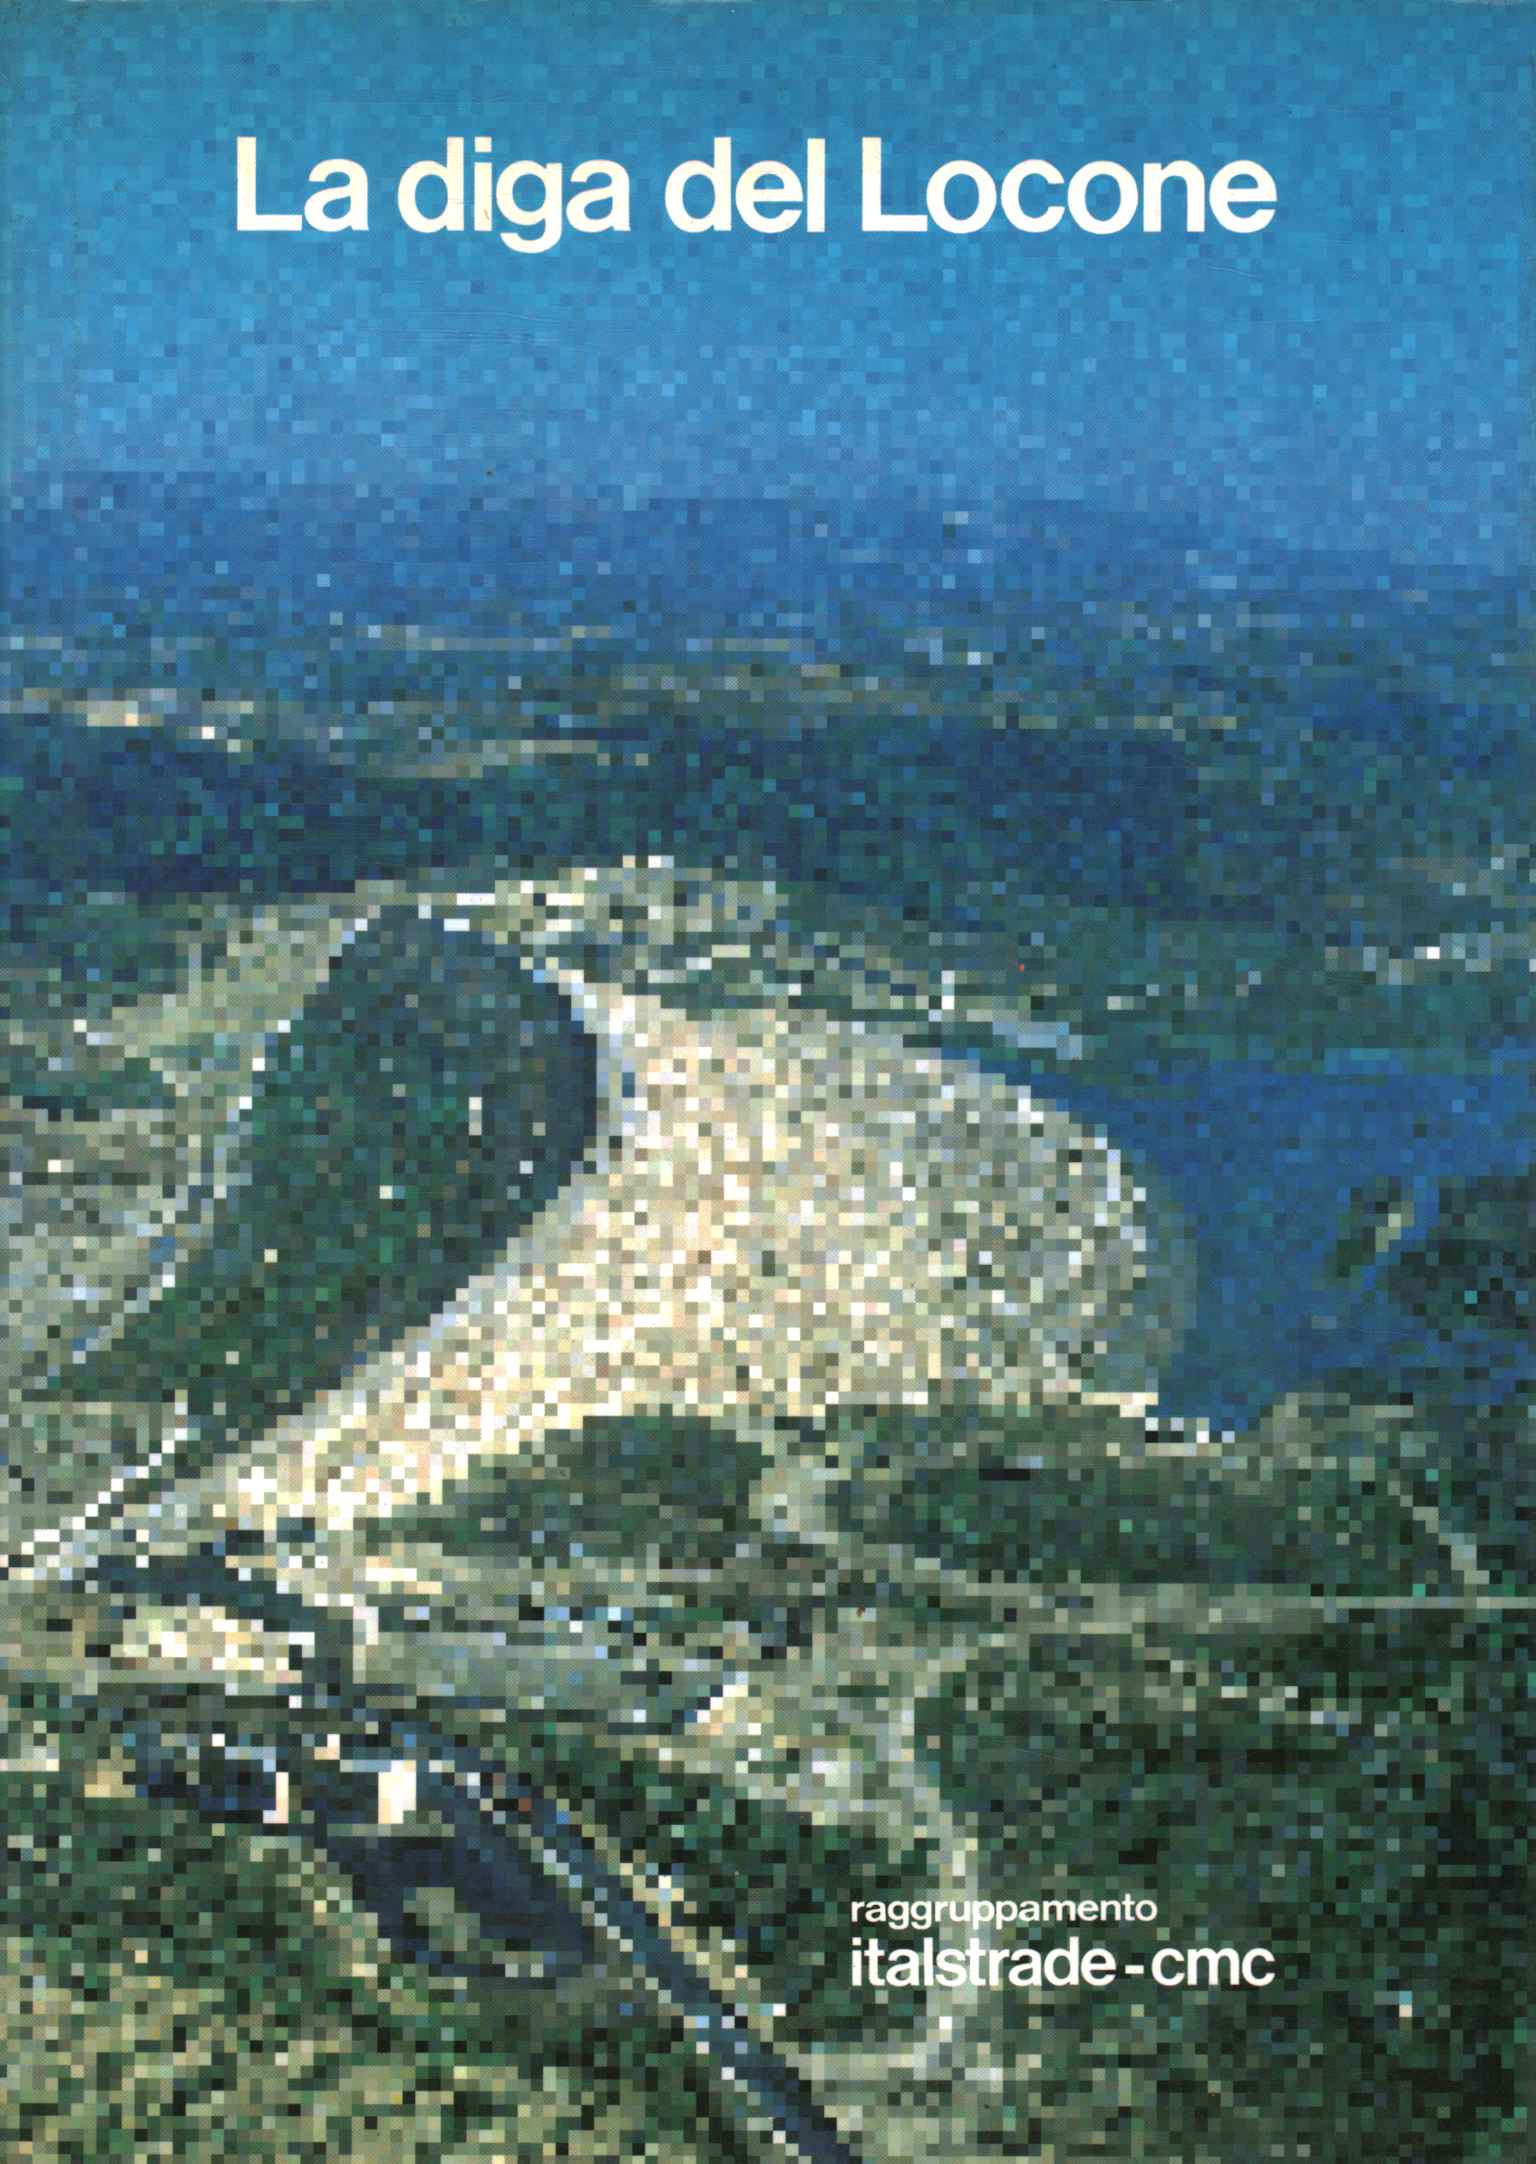 Le barrage de Locone